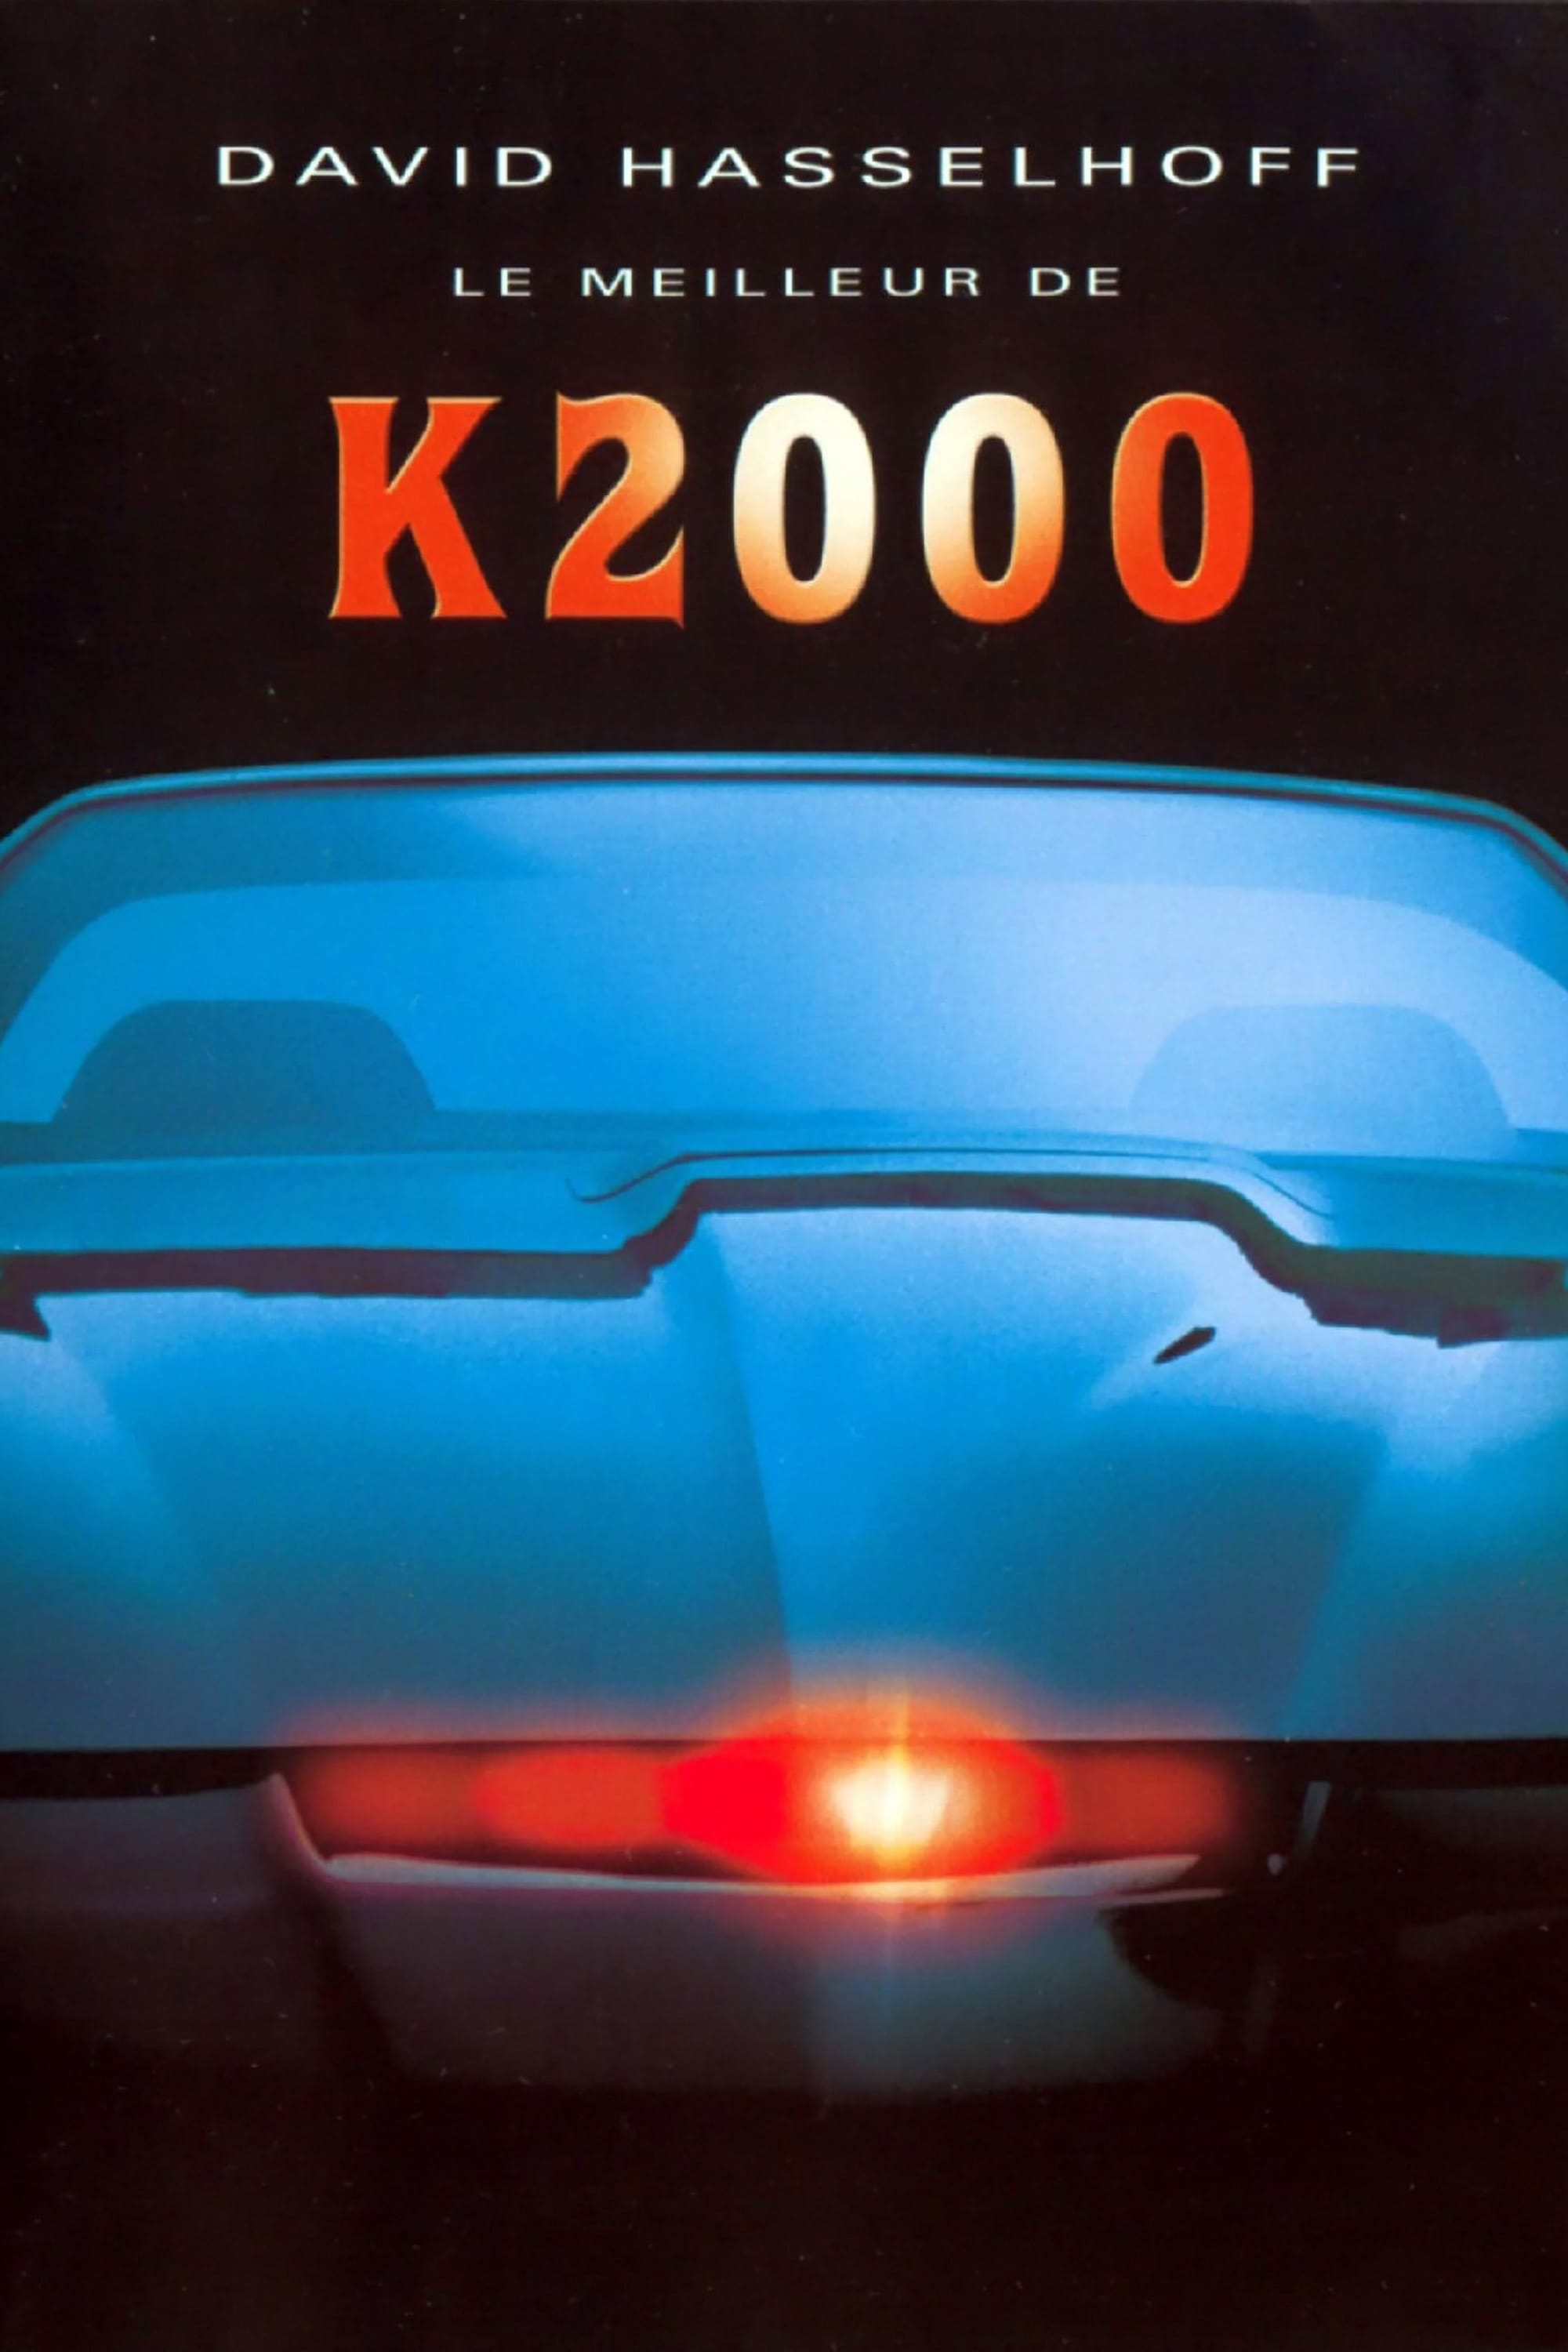 La mythique Pontiac de K2000 est à vendre ! Et c'est David Hasselhoff en  personne qui livrera le futur propriétaire ! - NeozOne